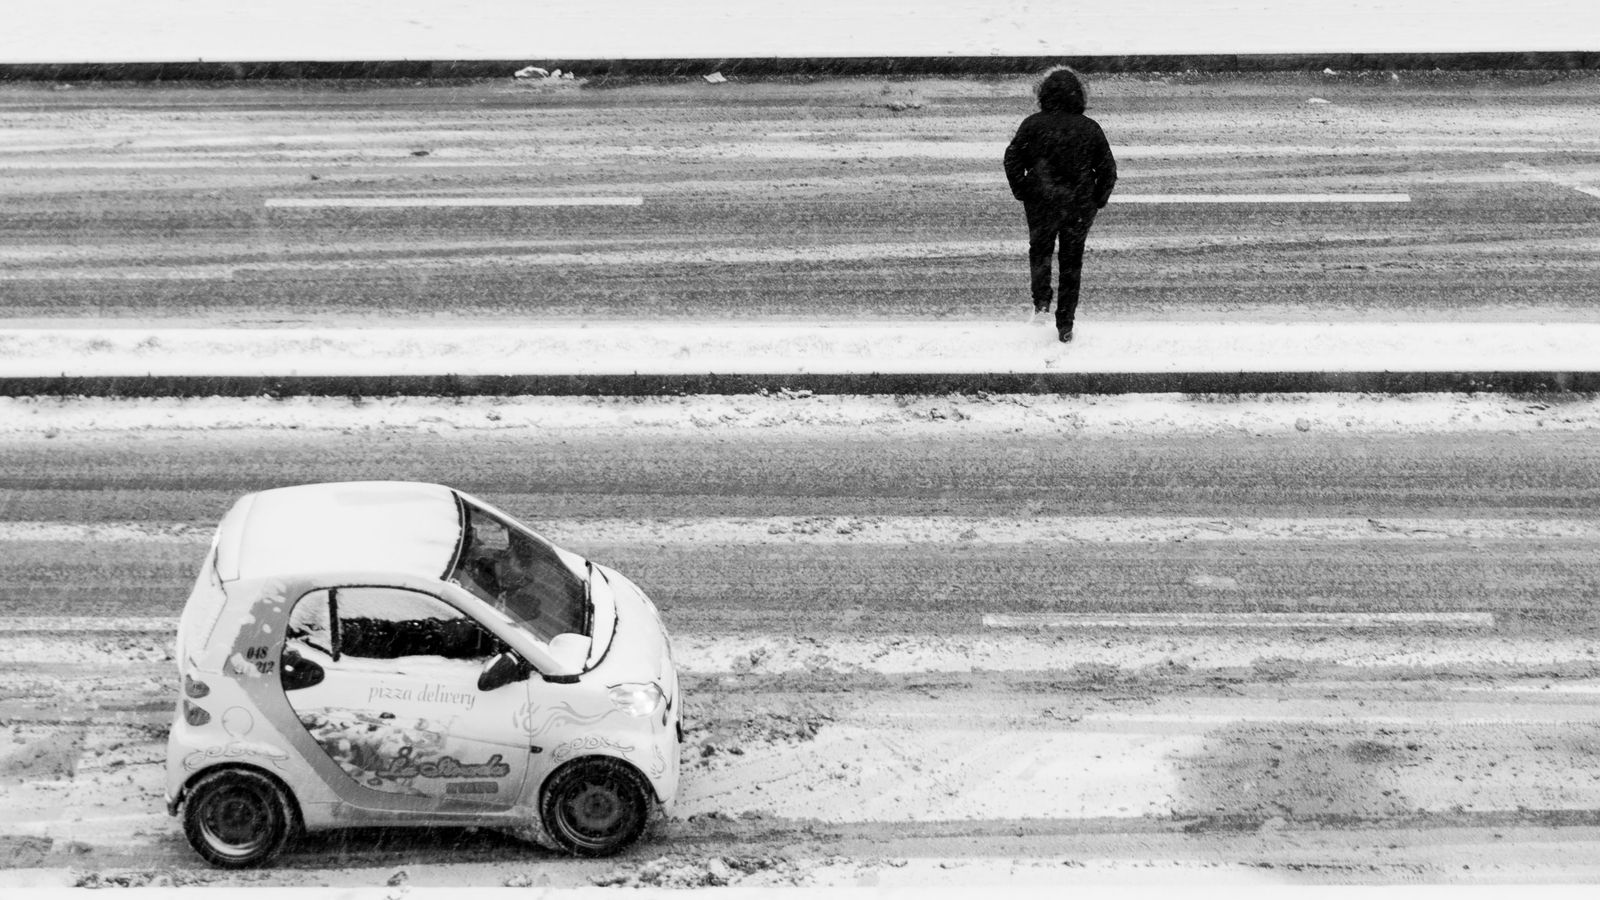 © Meri Boshkoska - Smart in the snow